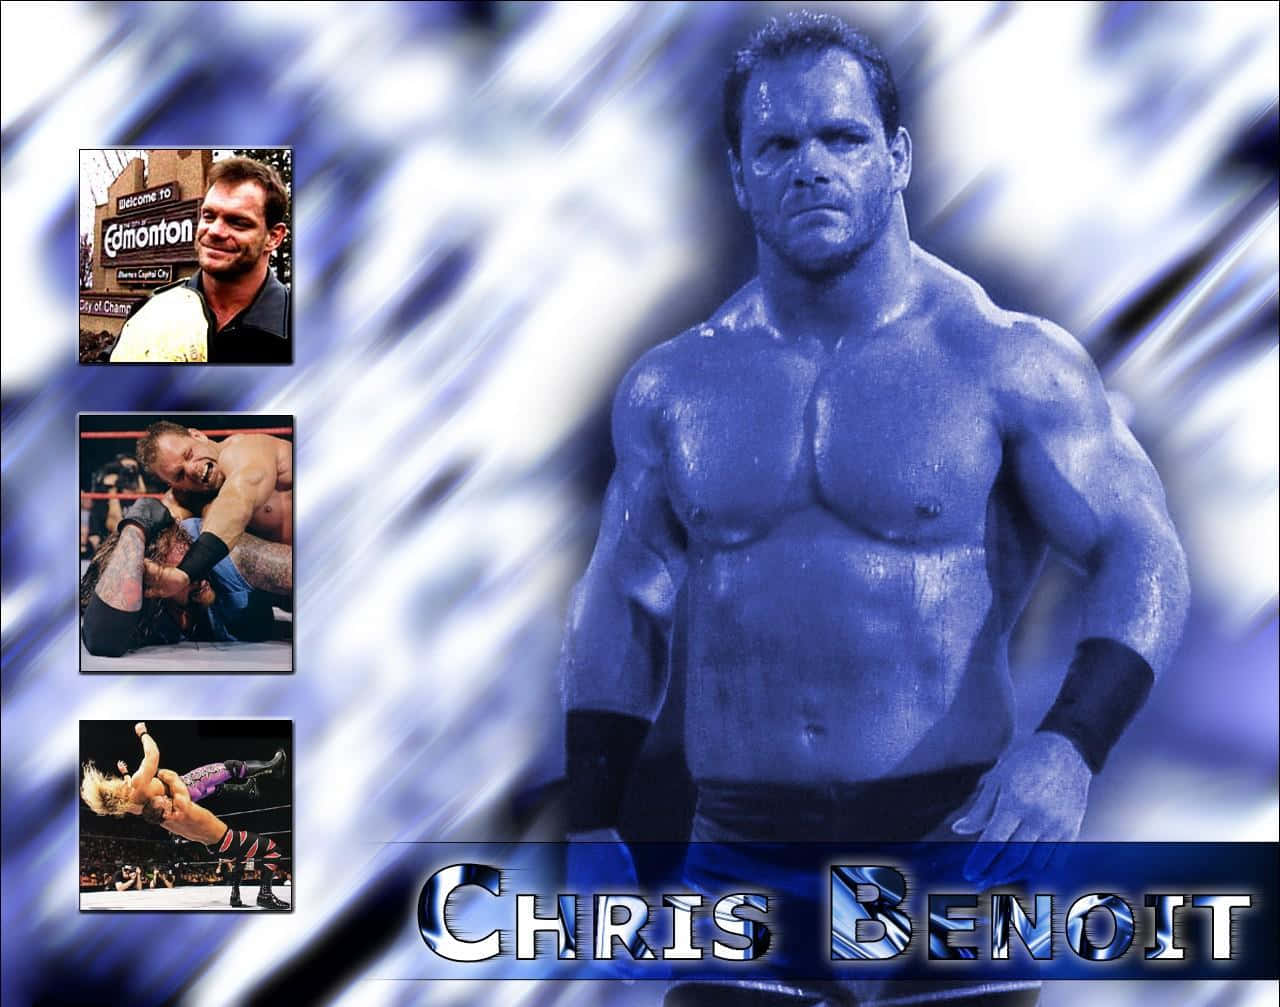 Legendary Wrestler Chris Benoit in Graphic Art Wallpaper